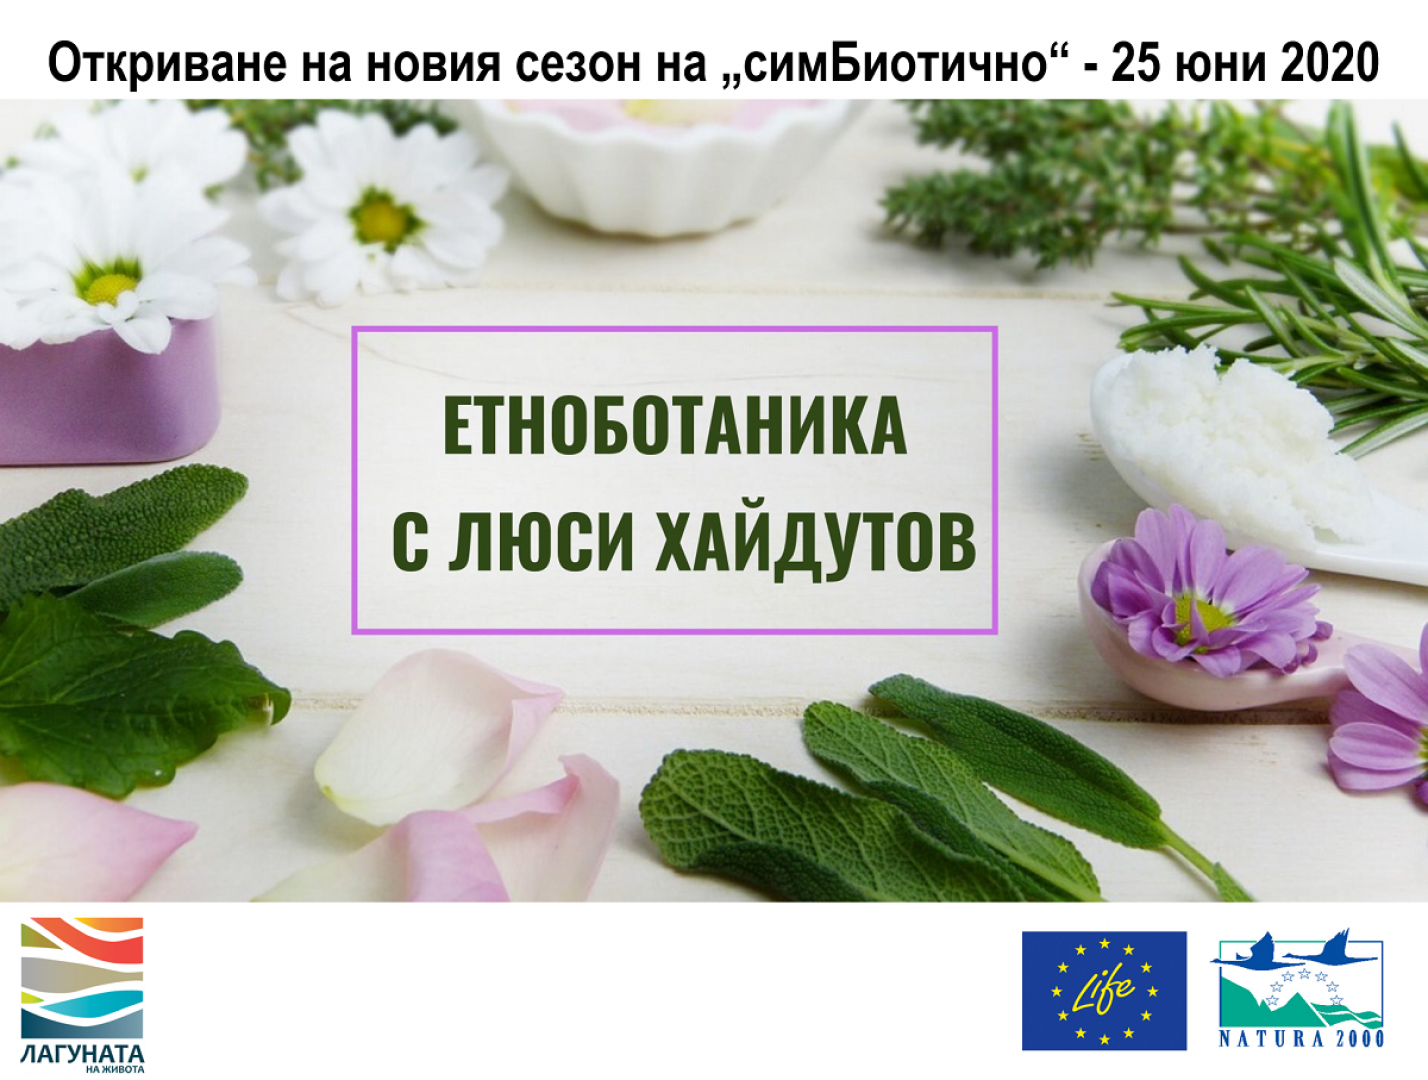 Откриват сезона на „симБиотично“ с презентация и уъркшоп по етноботаника - E-Burgas.com